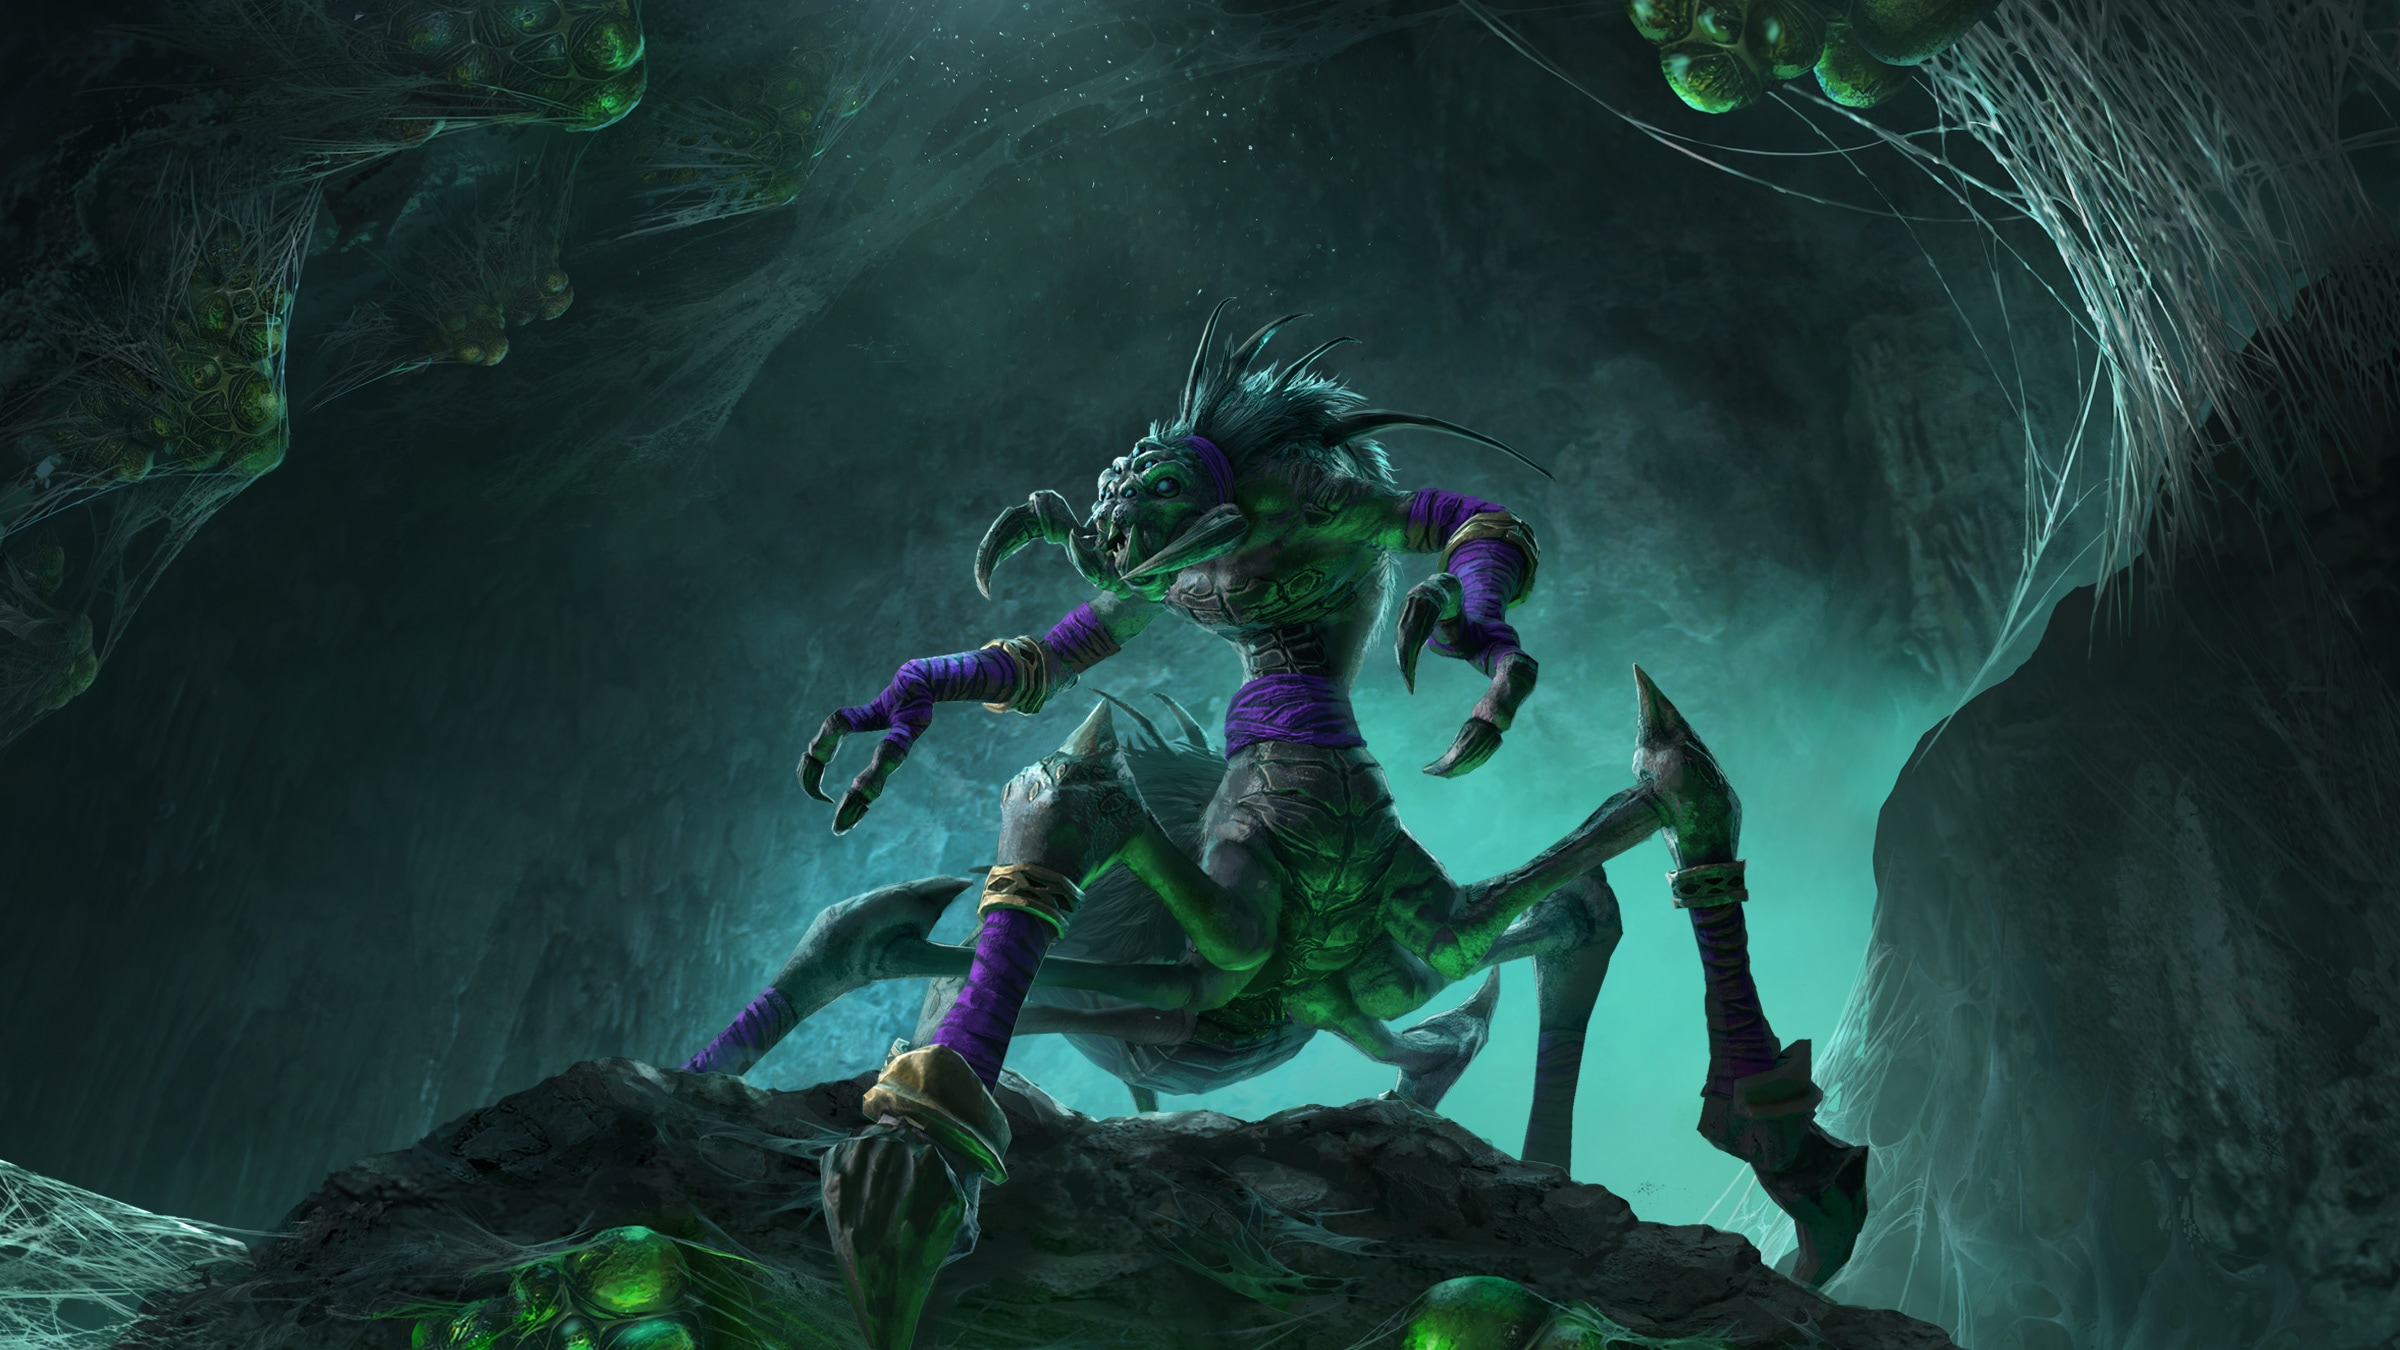 Aggiornamento dagli sviluppatori di Warcraft III: Reforged - Profili giocatore